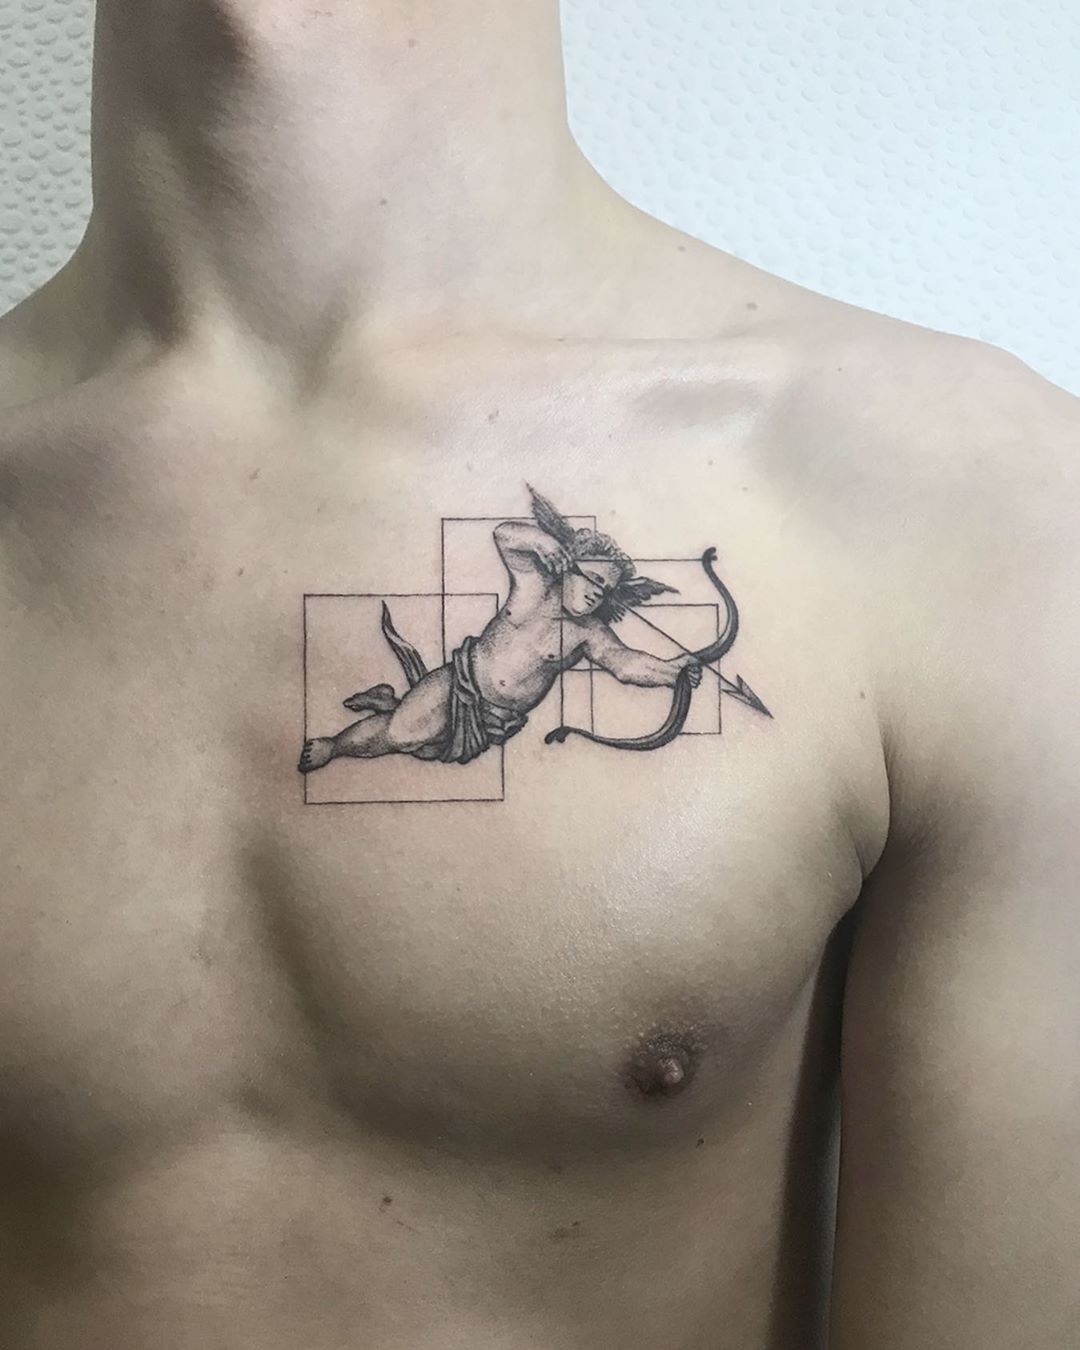 Wings mans chest tattoo artwork            tattoo tattoos  ink inked art tattooartist tattooart tattooed tattoolife  Instagram